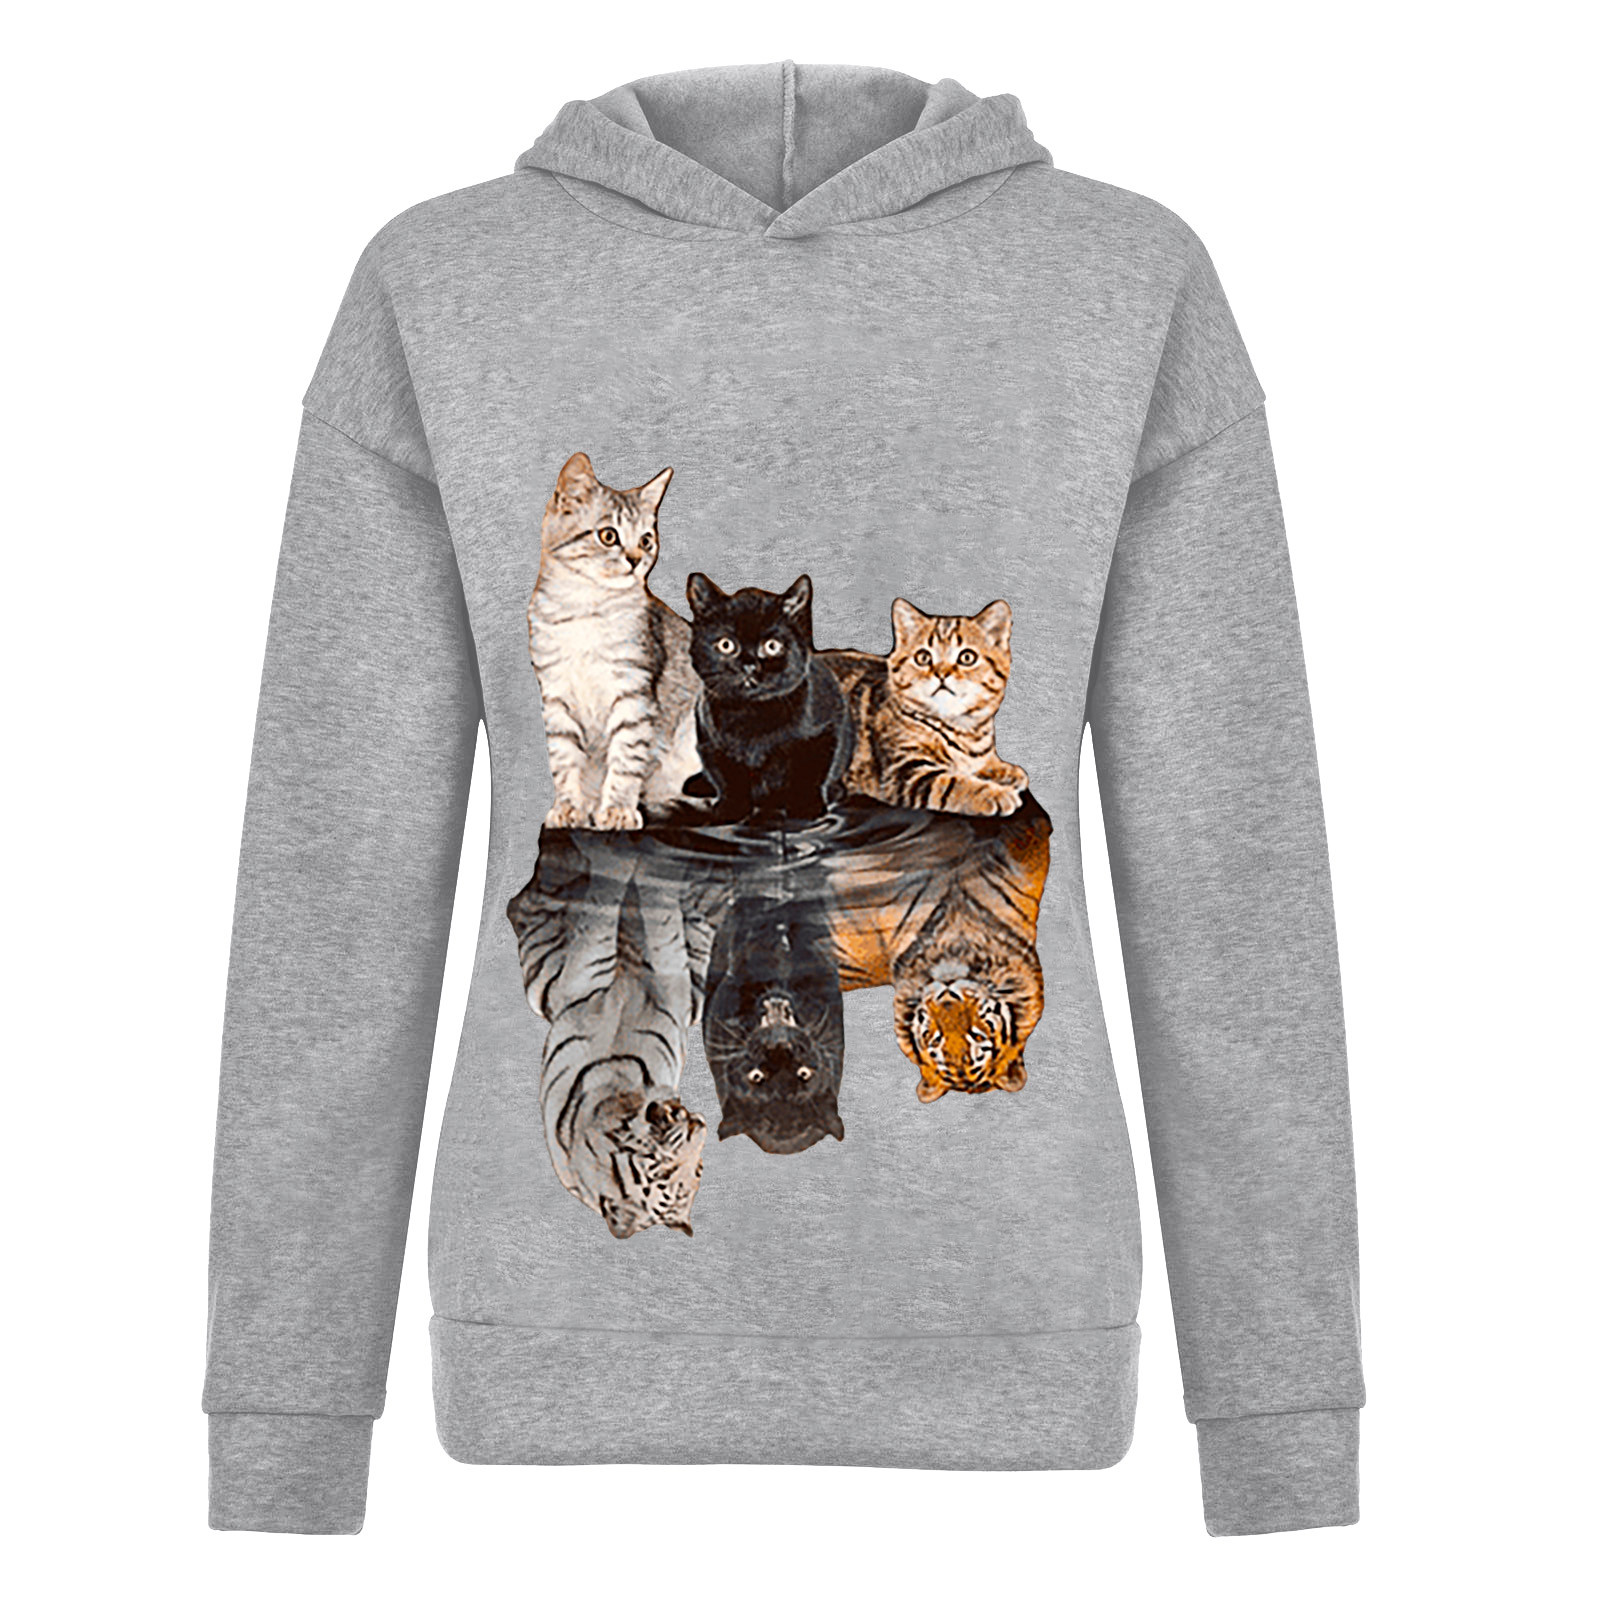 Harajuku Cat Print Hoodie Women Hoody Animal Printing Sweatshirts Long Sleeves Pullover Tops Sweatshirt Streetwear Hoodies